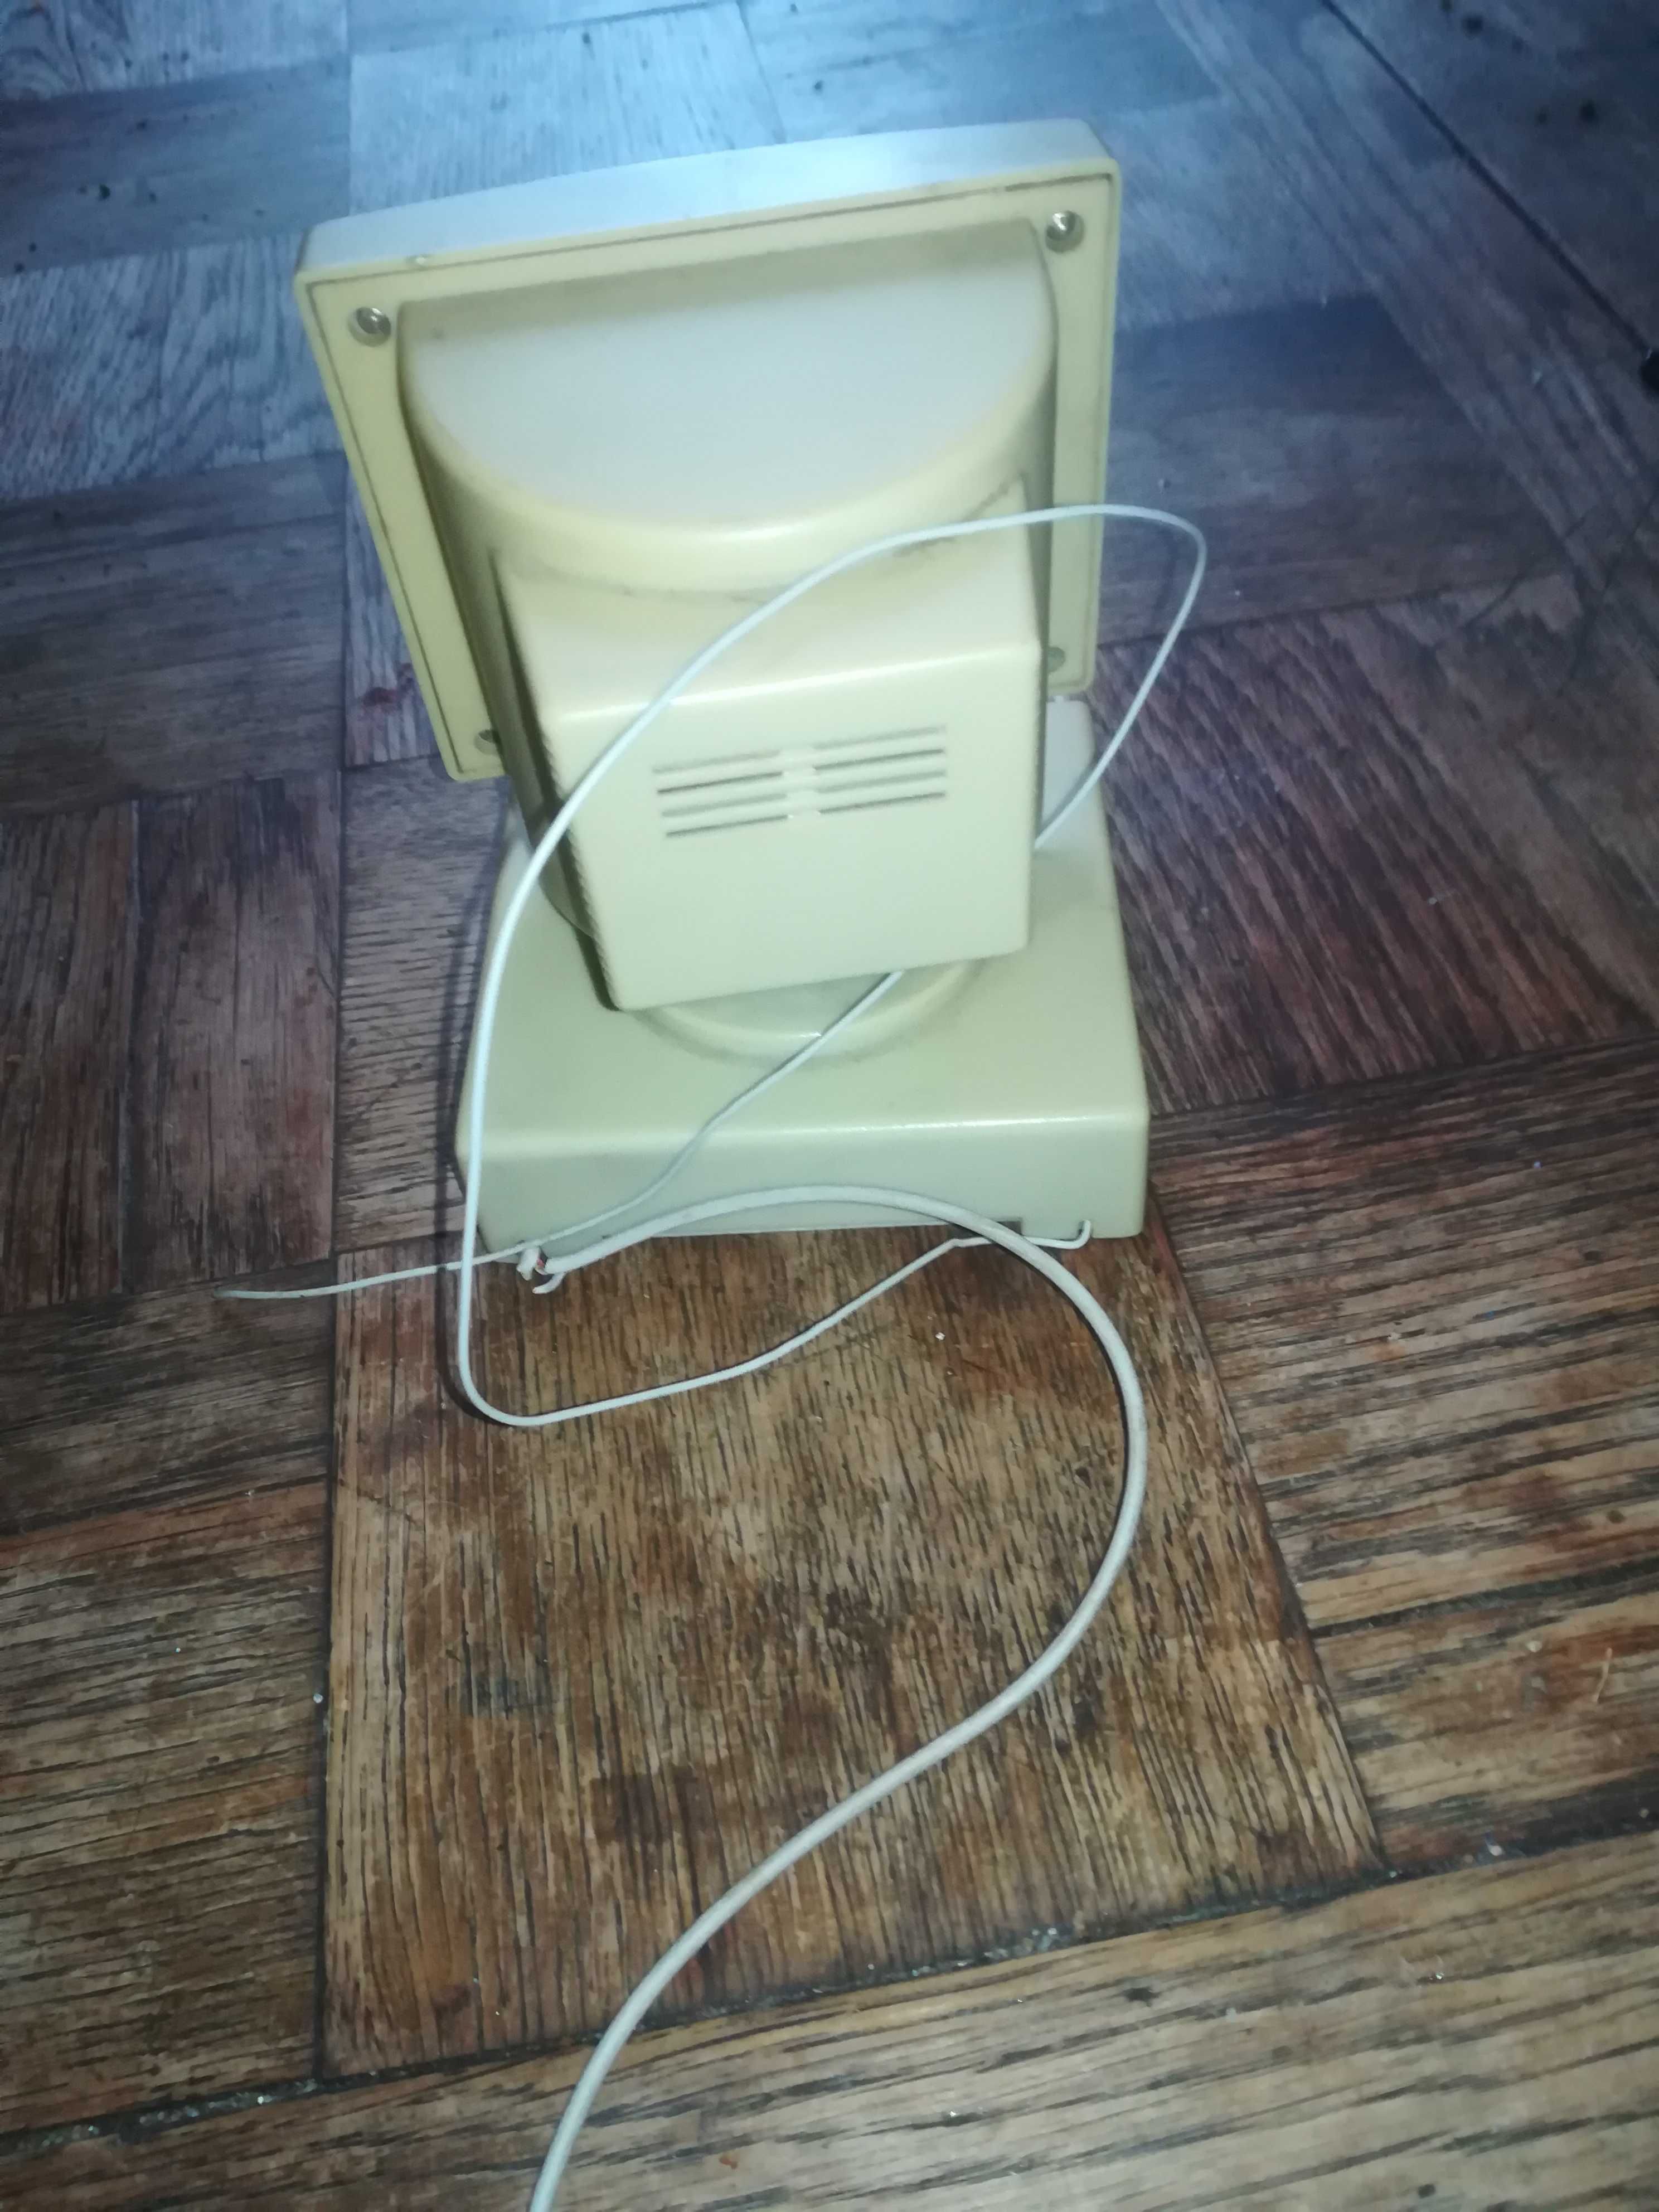 Radio mini komputer PC dla kolekcjonera